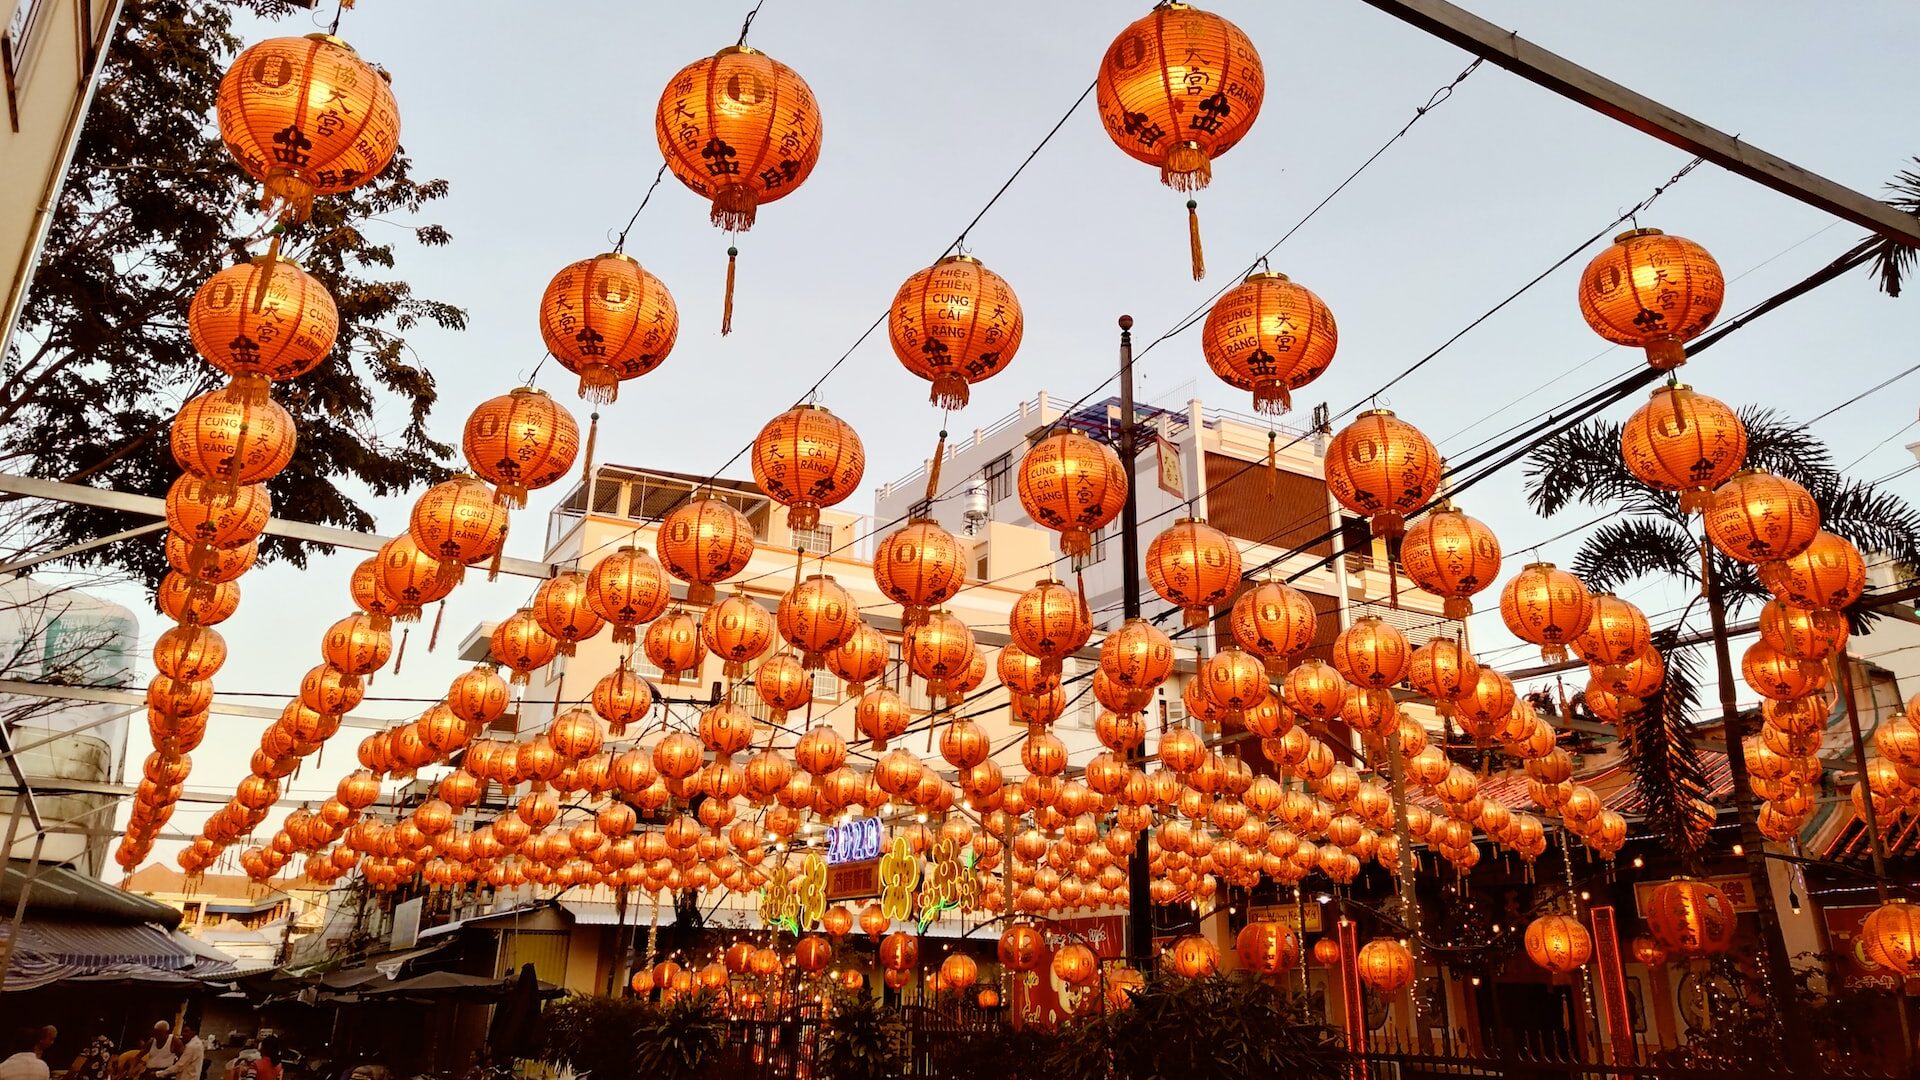 Dozens of hanging Chinese lanterns